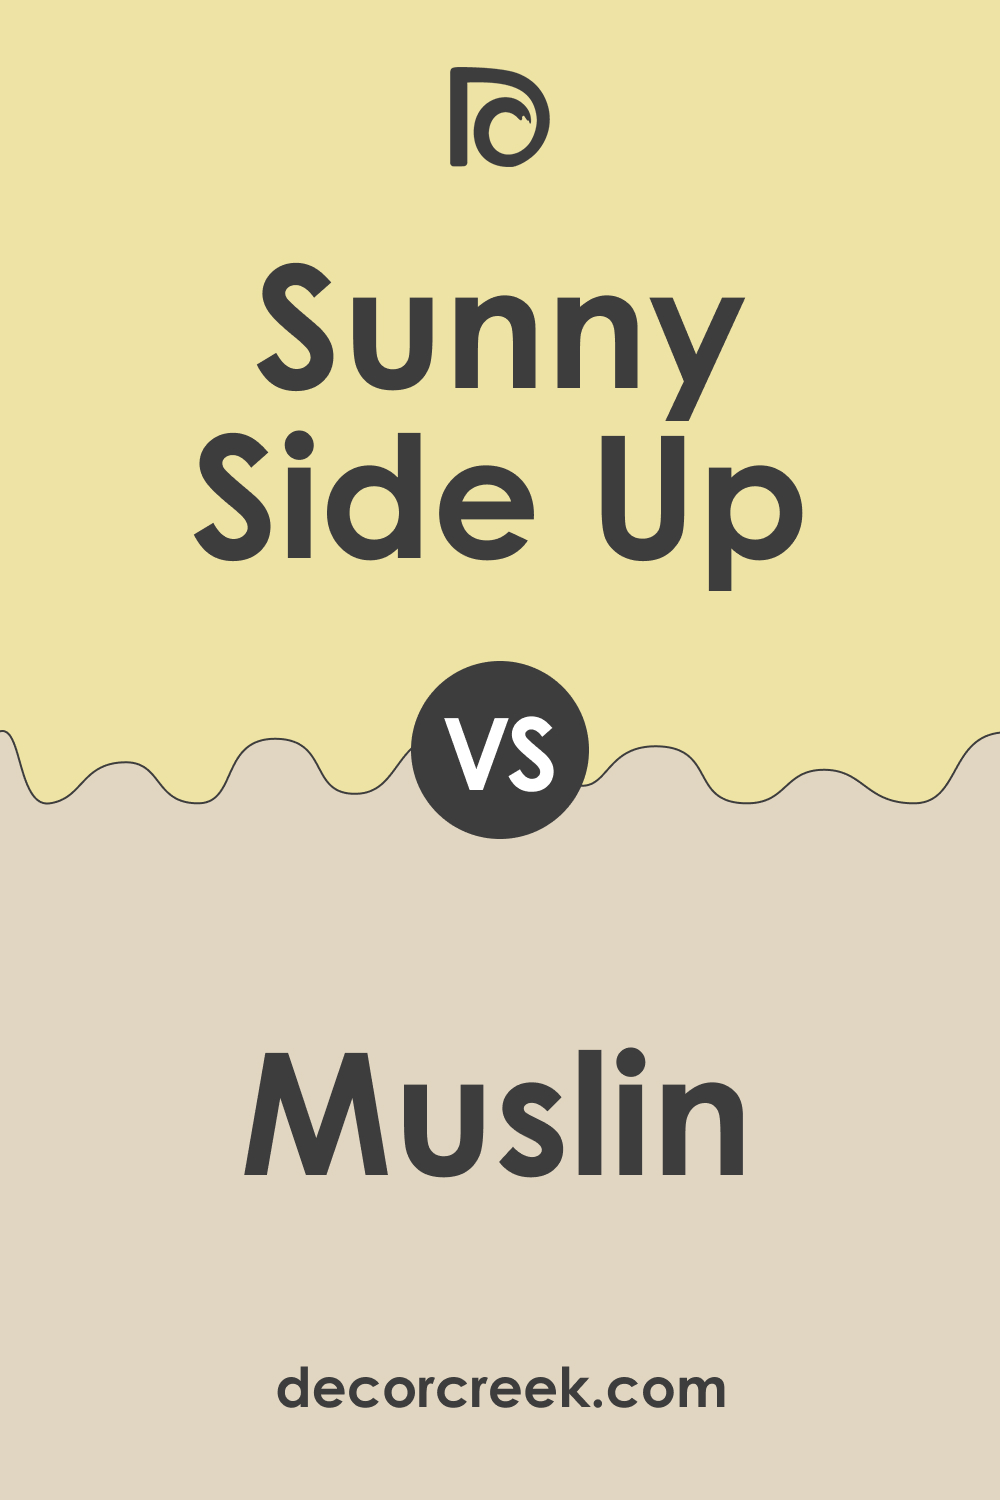 Sunny Side Up 367 vs. OC-12 Muslin